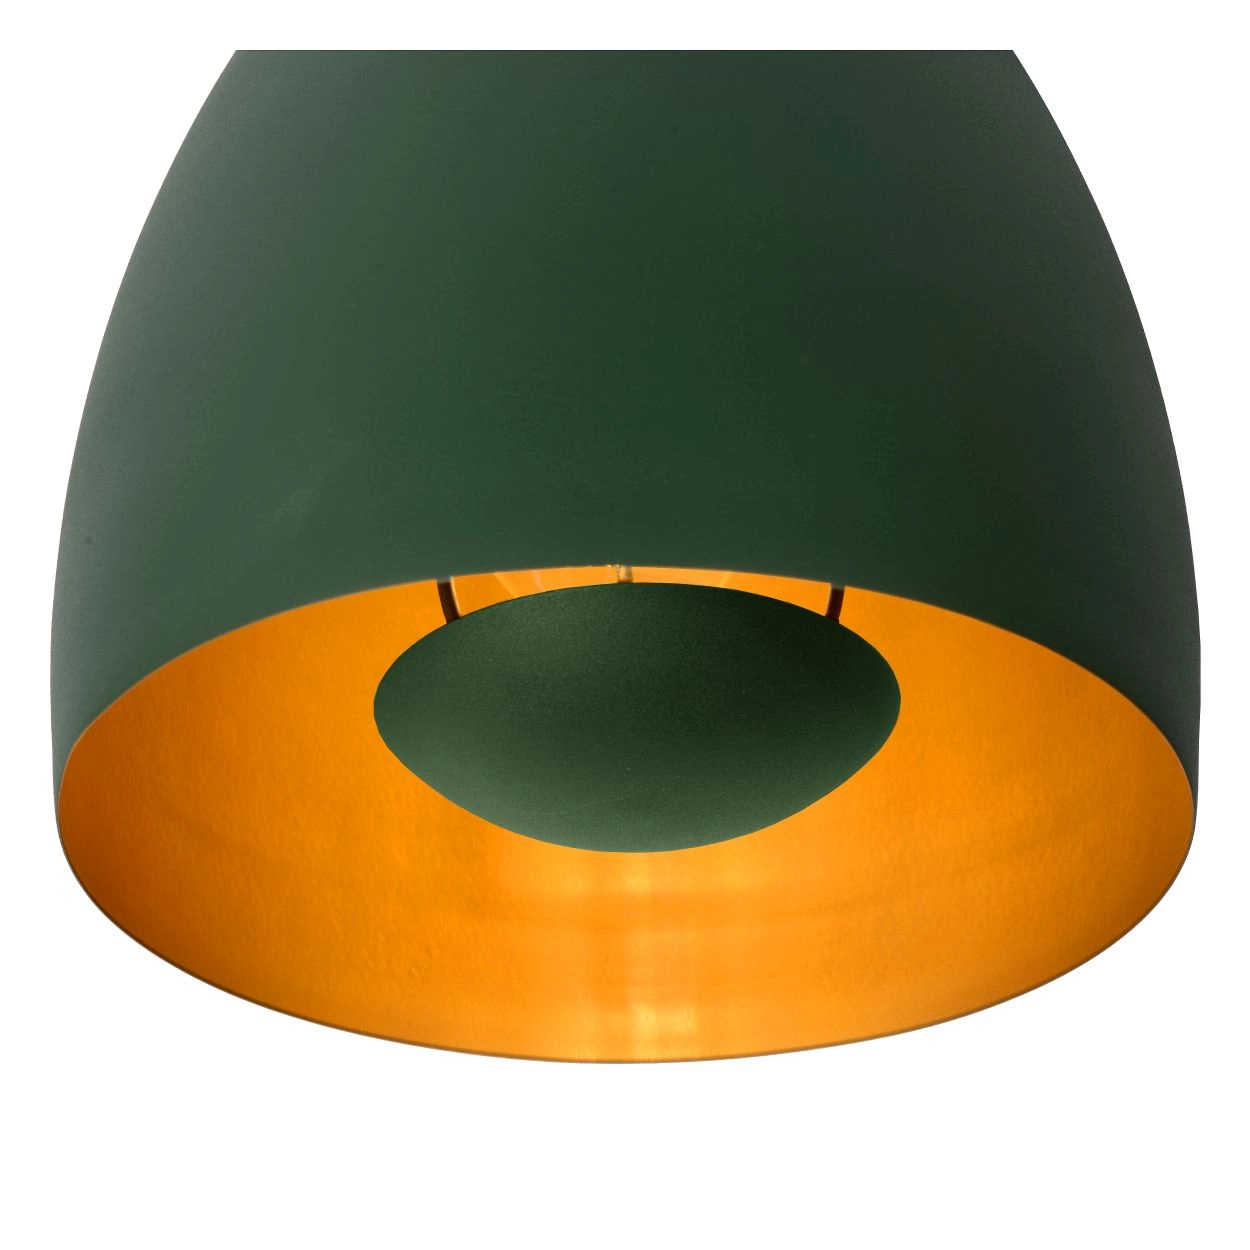 LU 30188/01/33 Lucide NOLAN - Flush ceiling light - Ø 24 cm - 1xE27 - Green